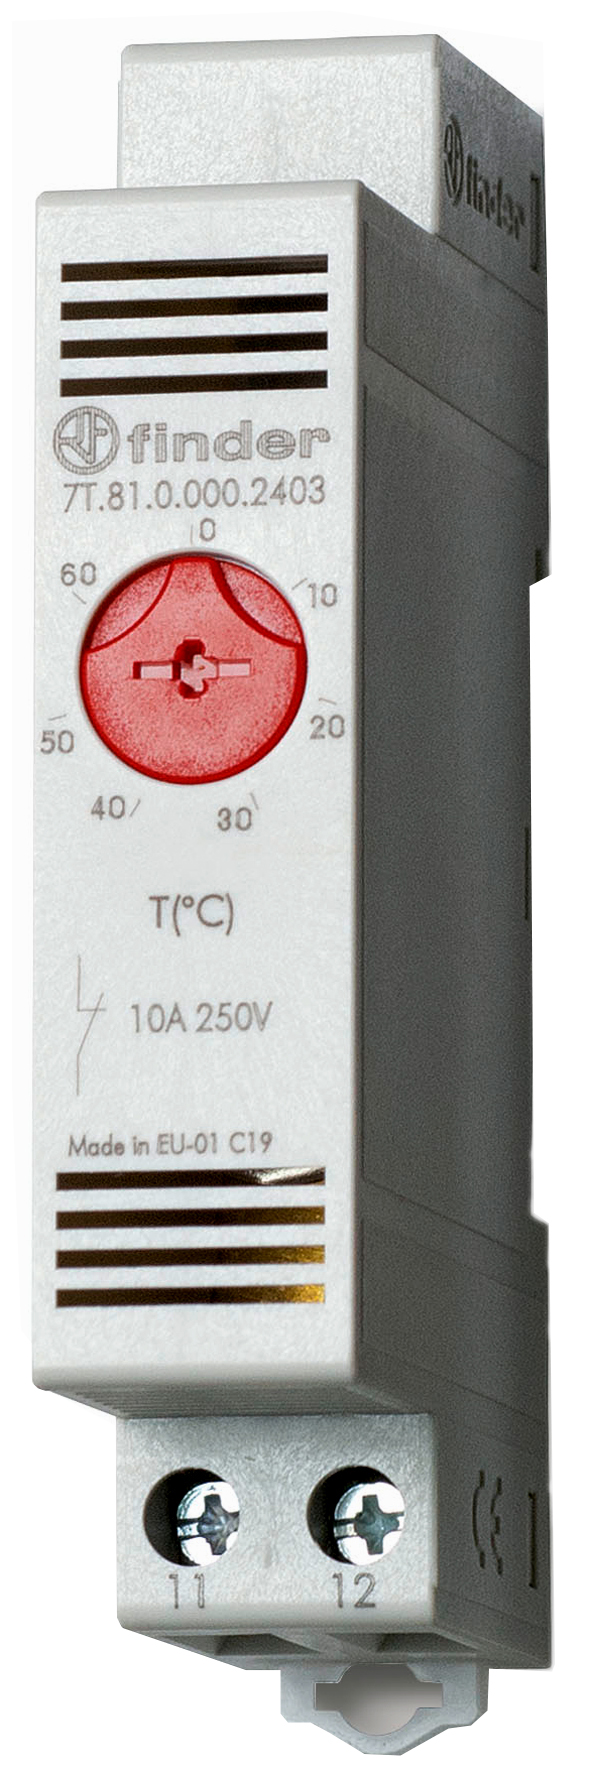 Finder Vari-Thermostat 1Ö-10A f. DIN-Schiene 7T.81.0.000.2403